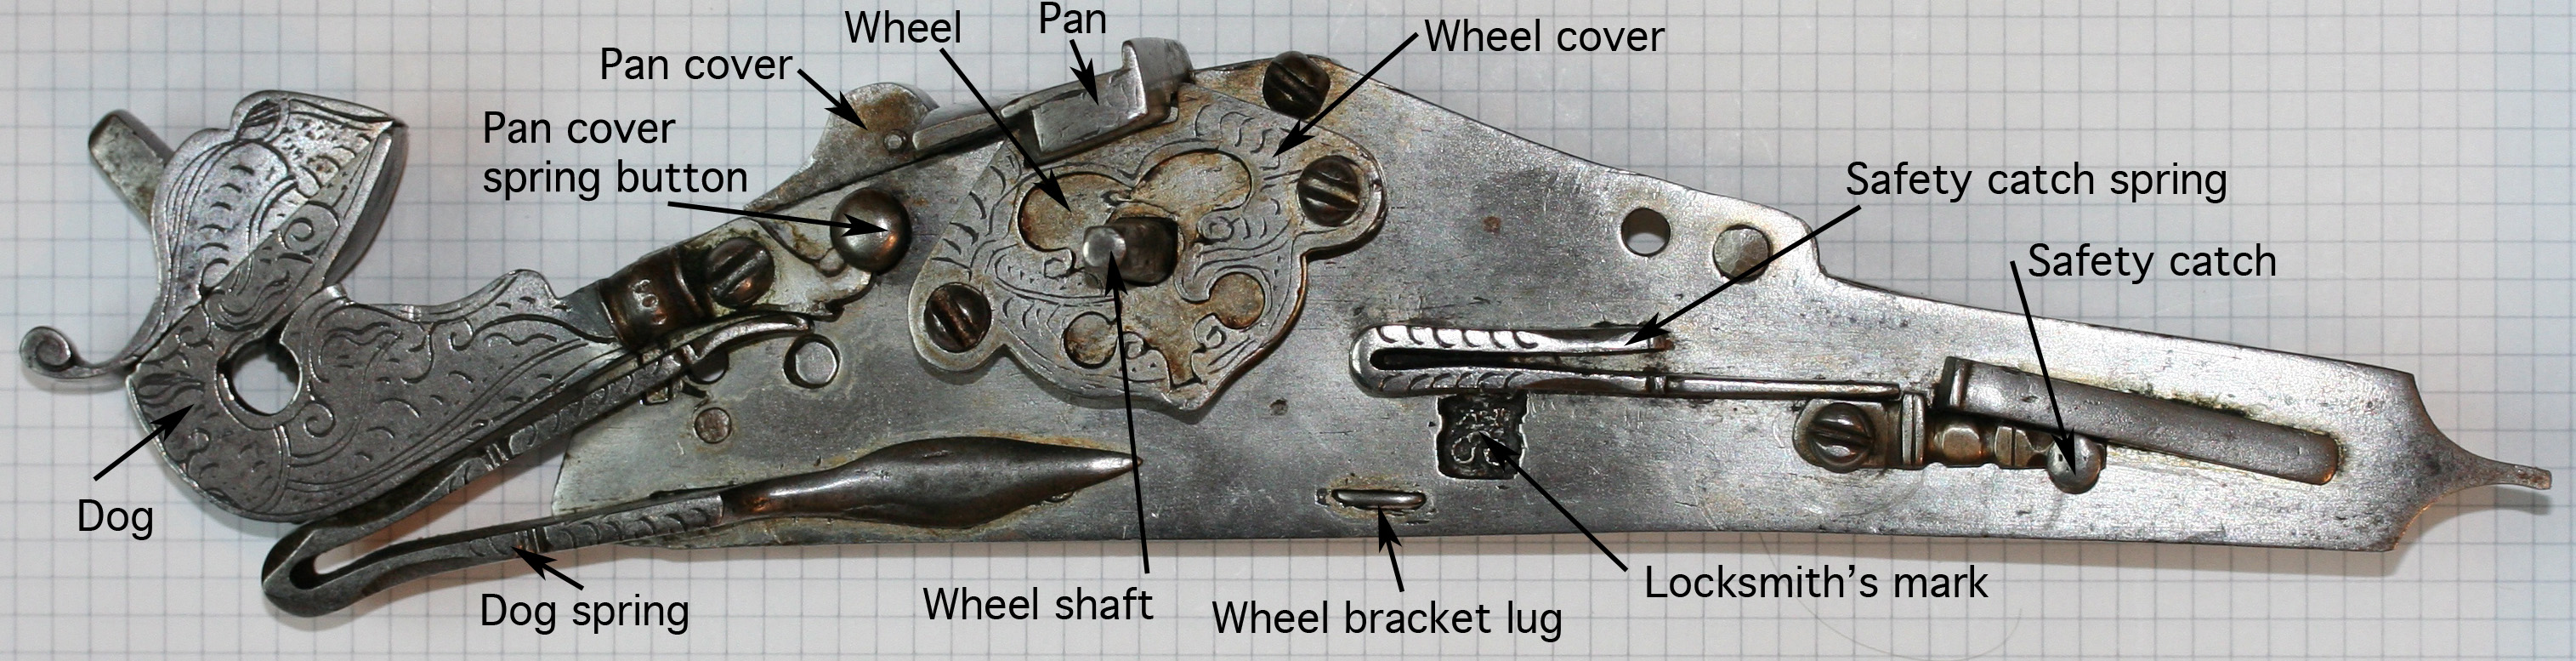 Wheellock_mechanism_explained_2.jpg